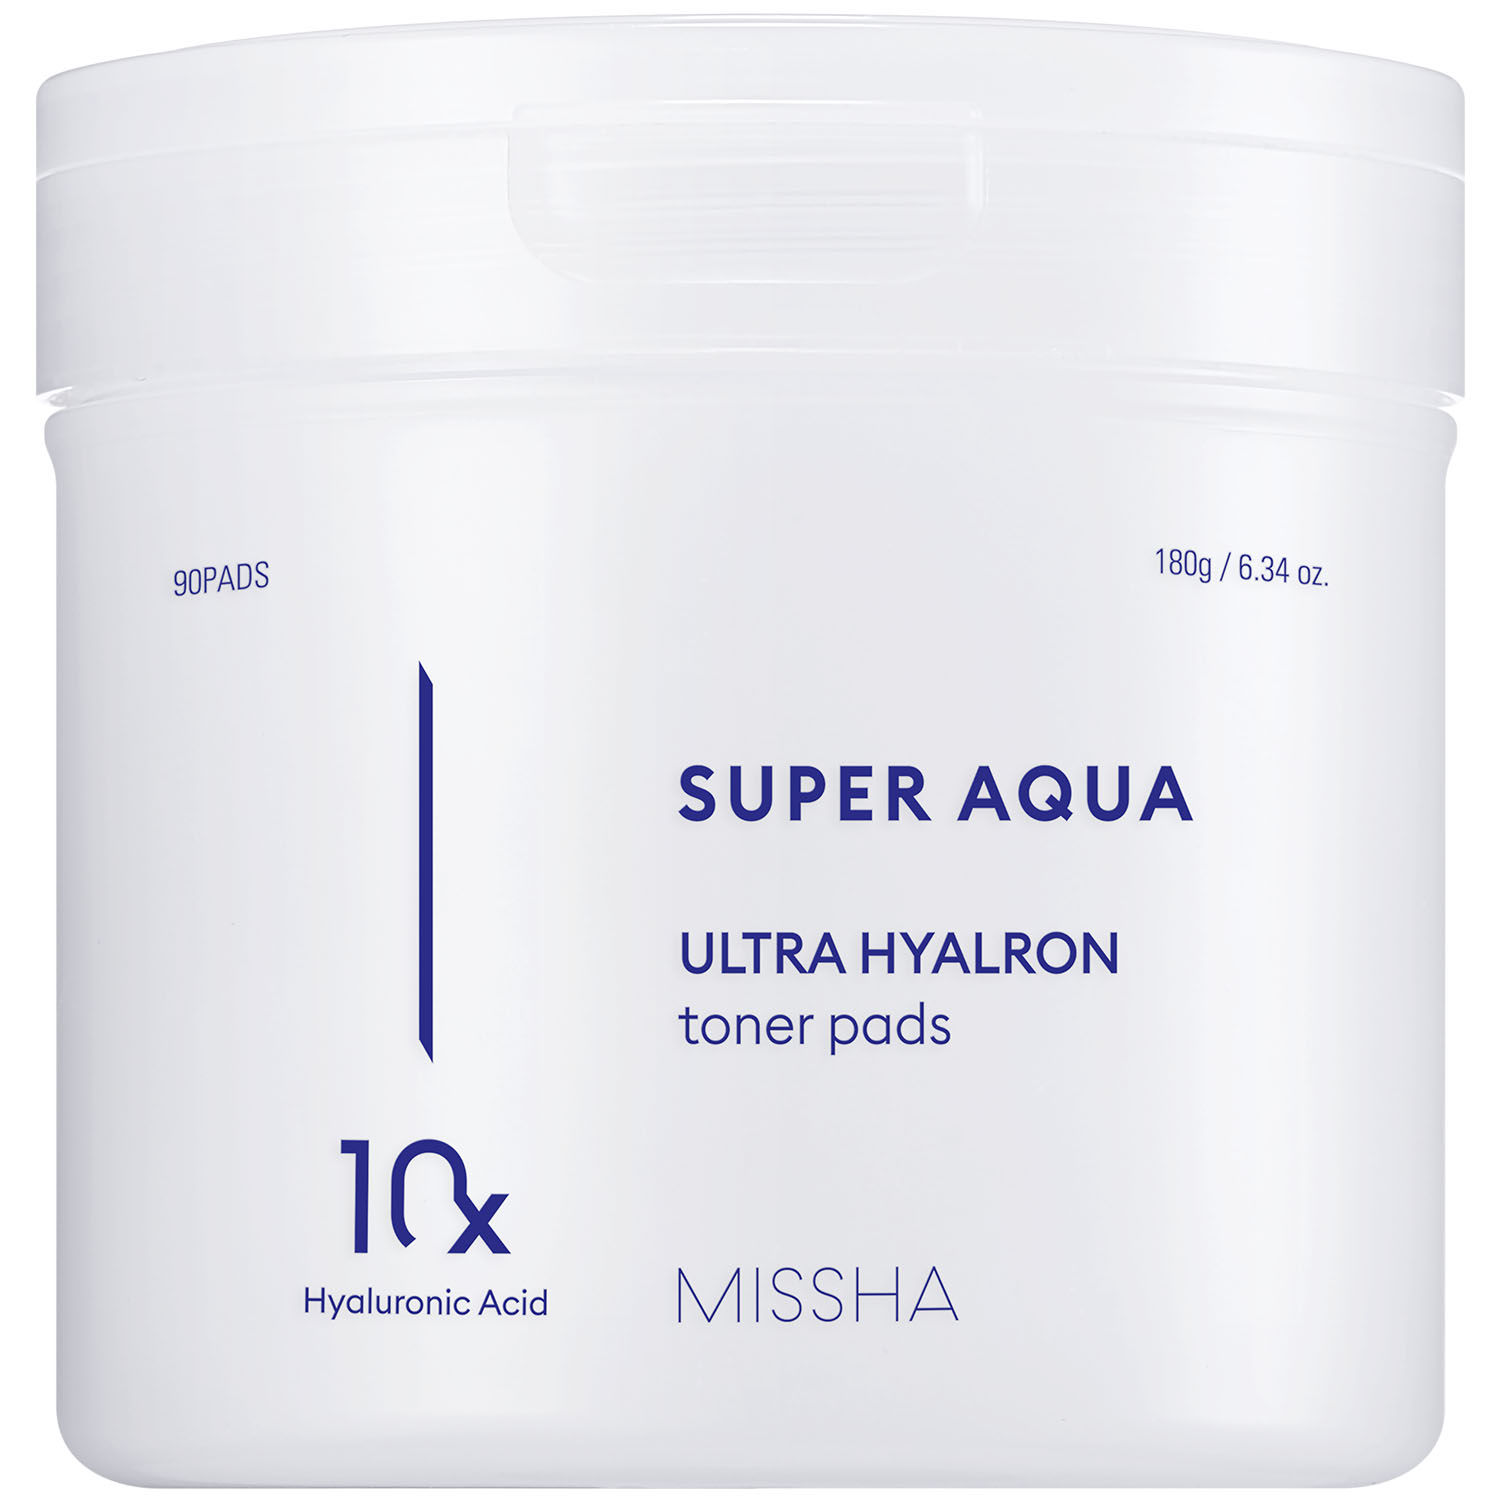 Missha Увлажняющие тонер-пэды для лица Ultra Hyalron, 90 шт (Missha, Super Aqua) missha super aqua тонер в салфетках для ультраувлажнения 90 шт 18 г 6 34 унции